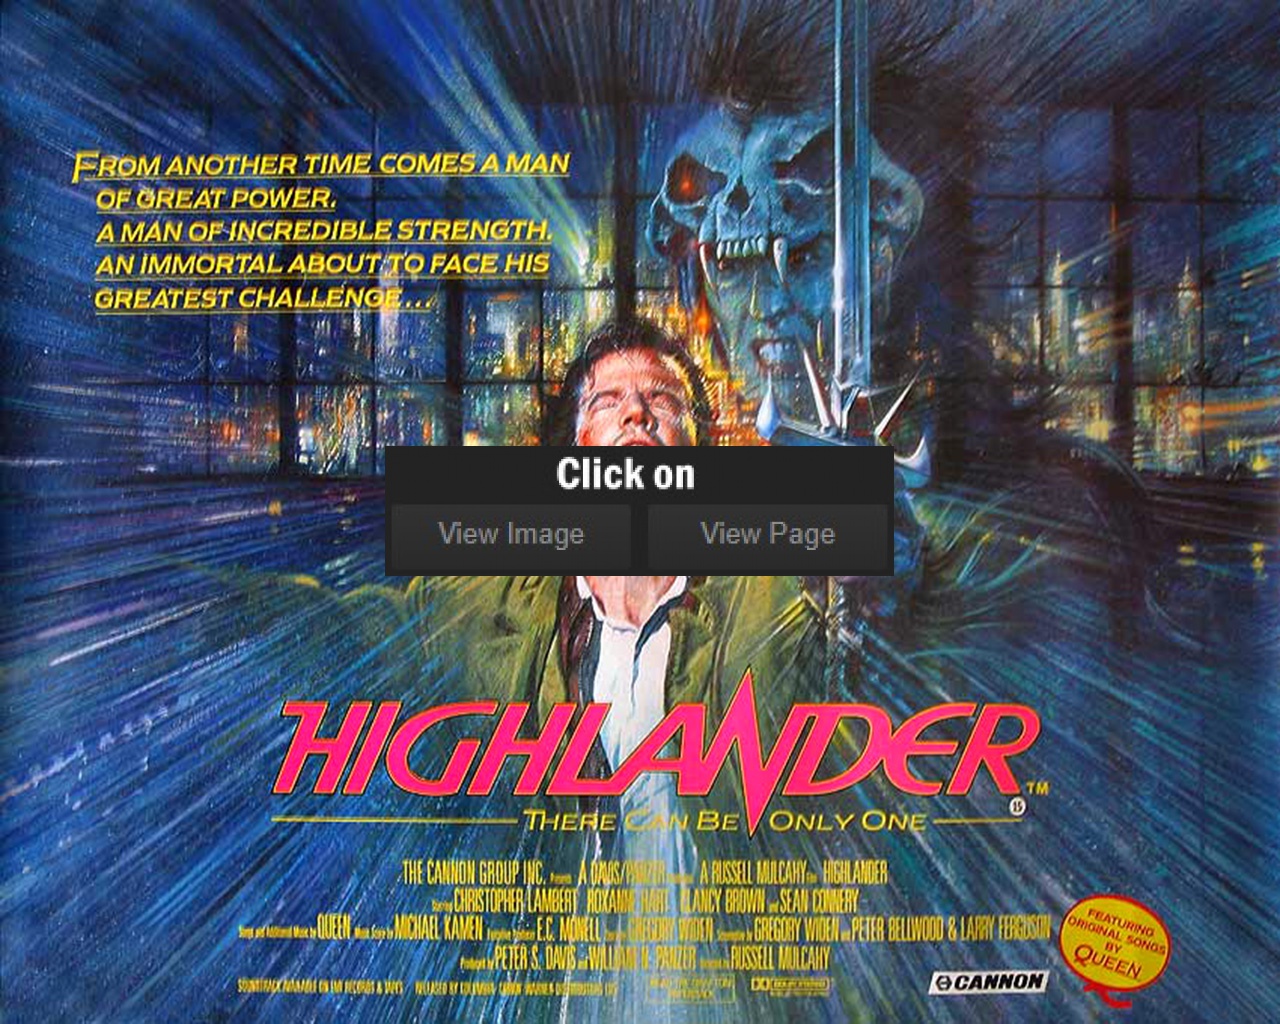 fondo de pantalla de highlander,juego de acción y aventura,película,póster,publicidad,juegos